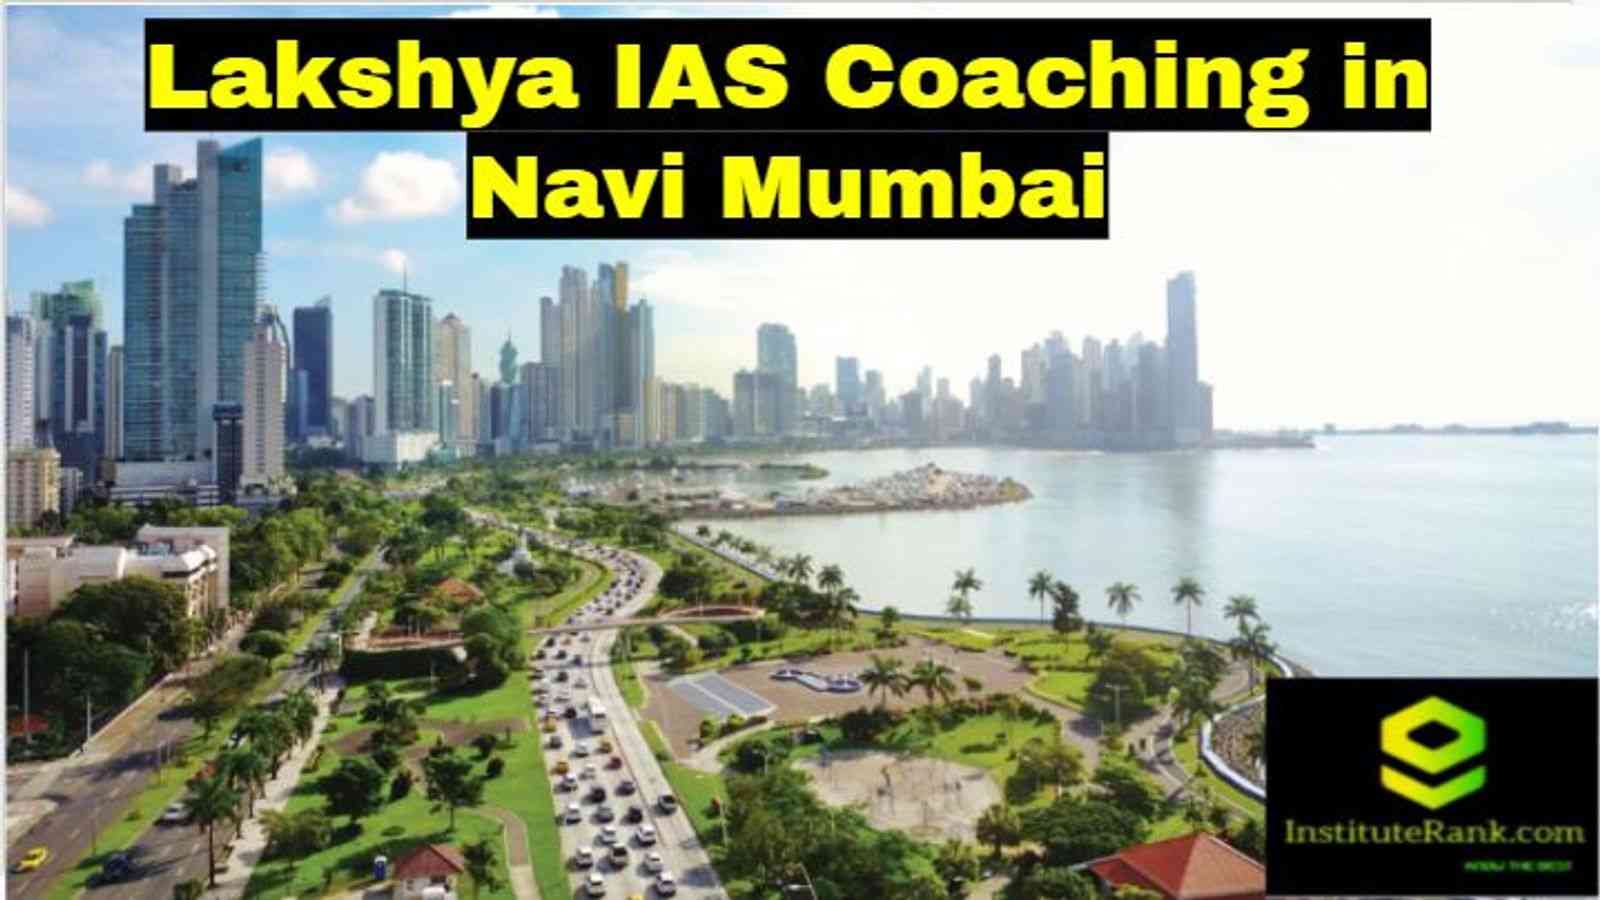 Lakshya IAS Coaching in Navi Mumbai